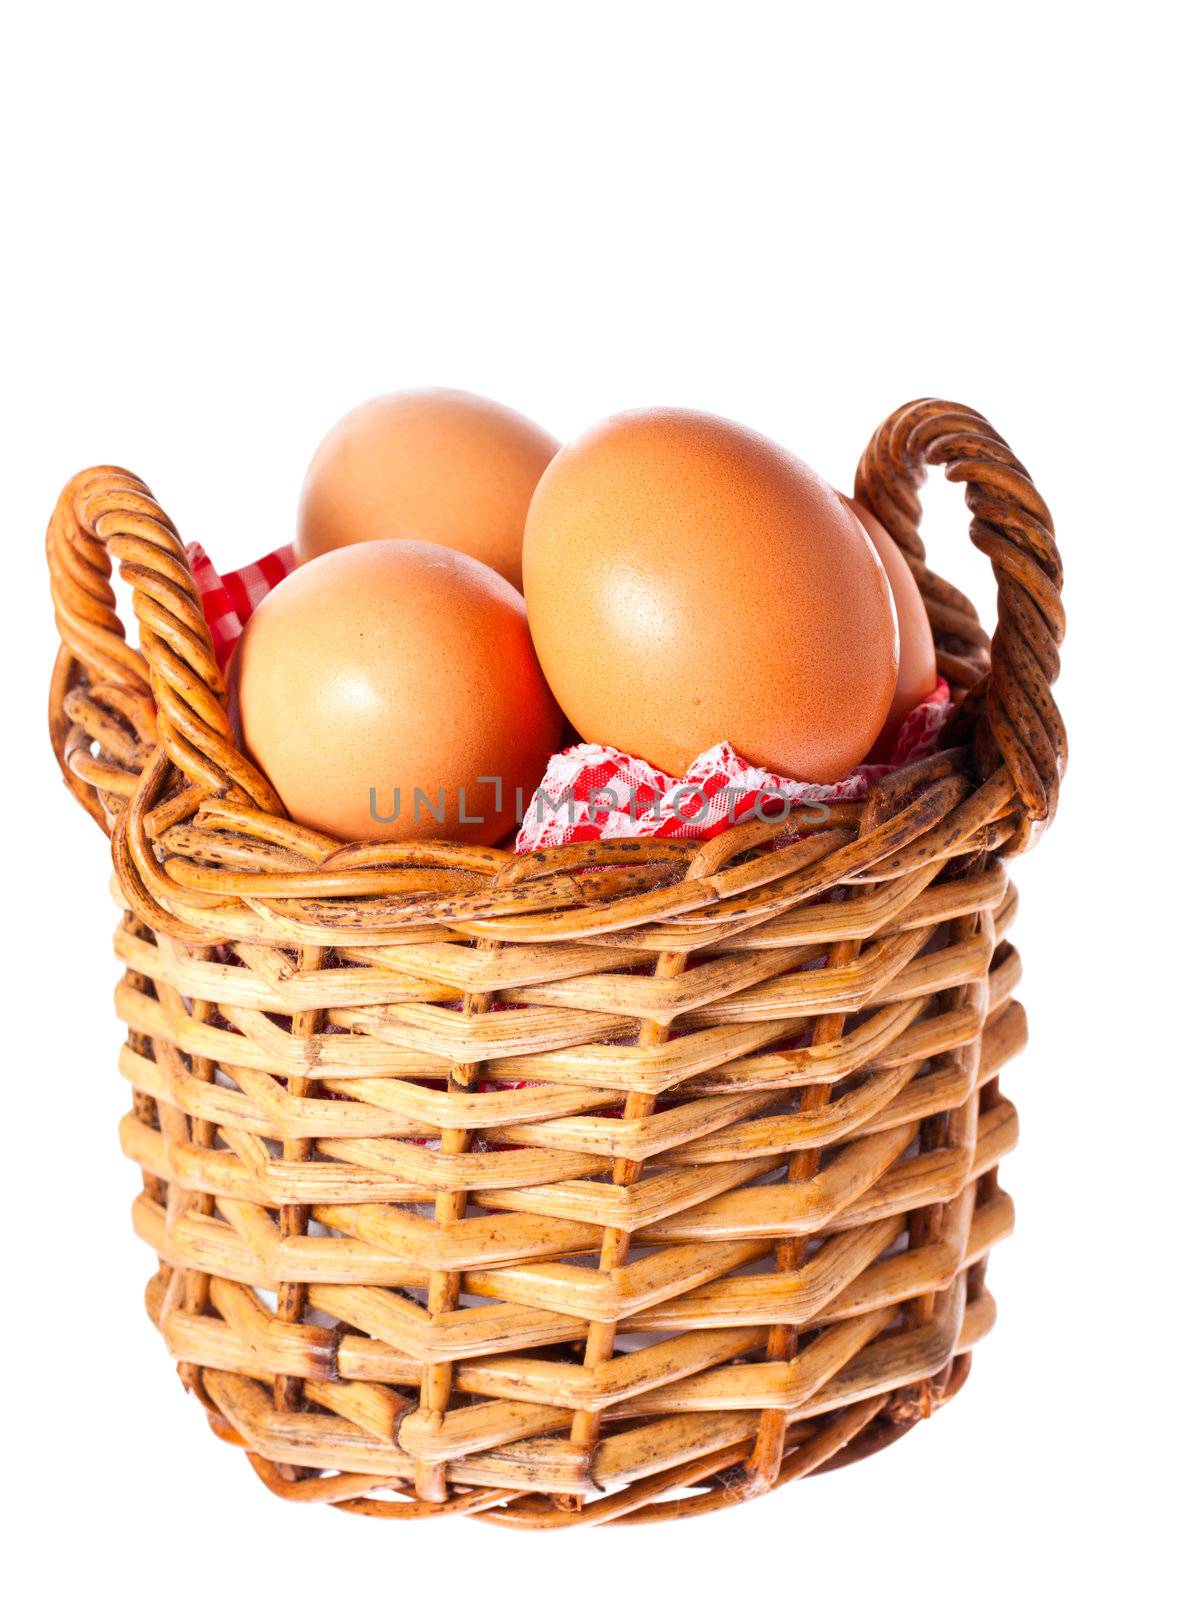 Fresh free range chicken eggs in a basket by Jaykayl